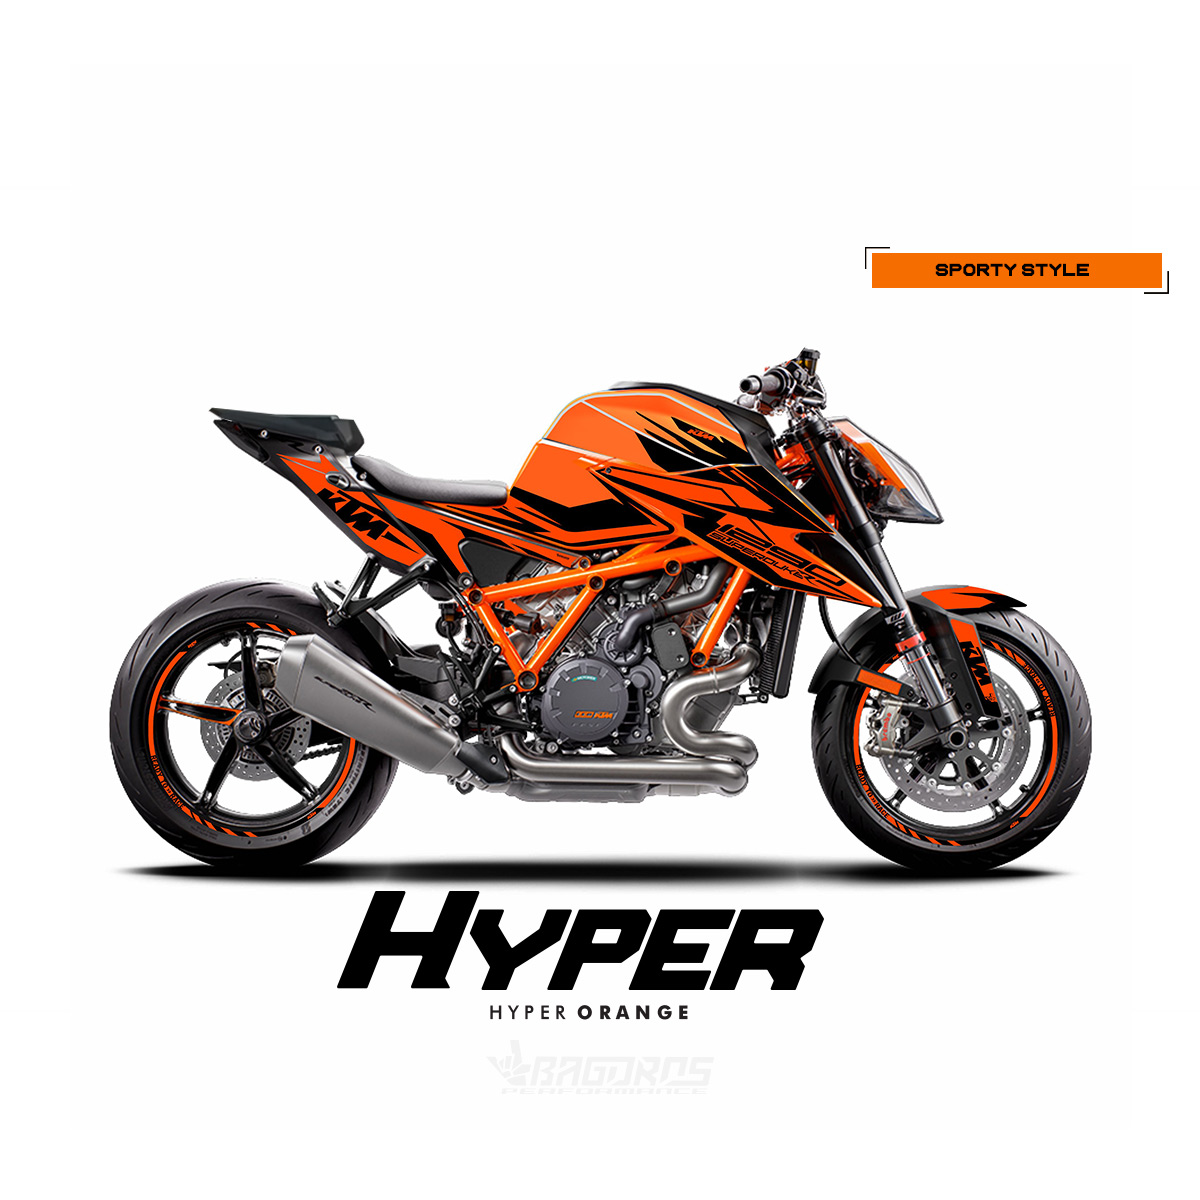 Sticker kit HYPER orange for KTM Superduke 1290 R / EVO